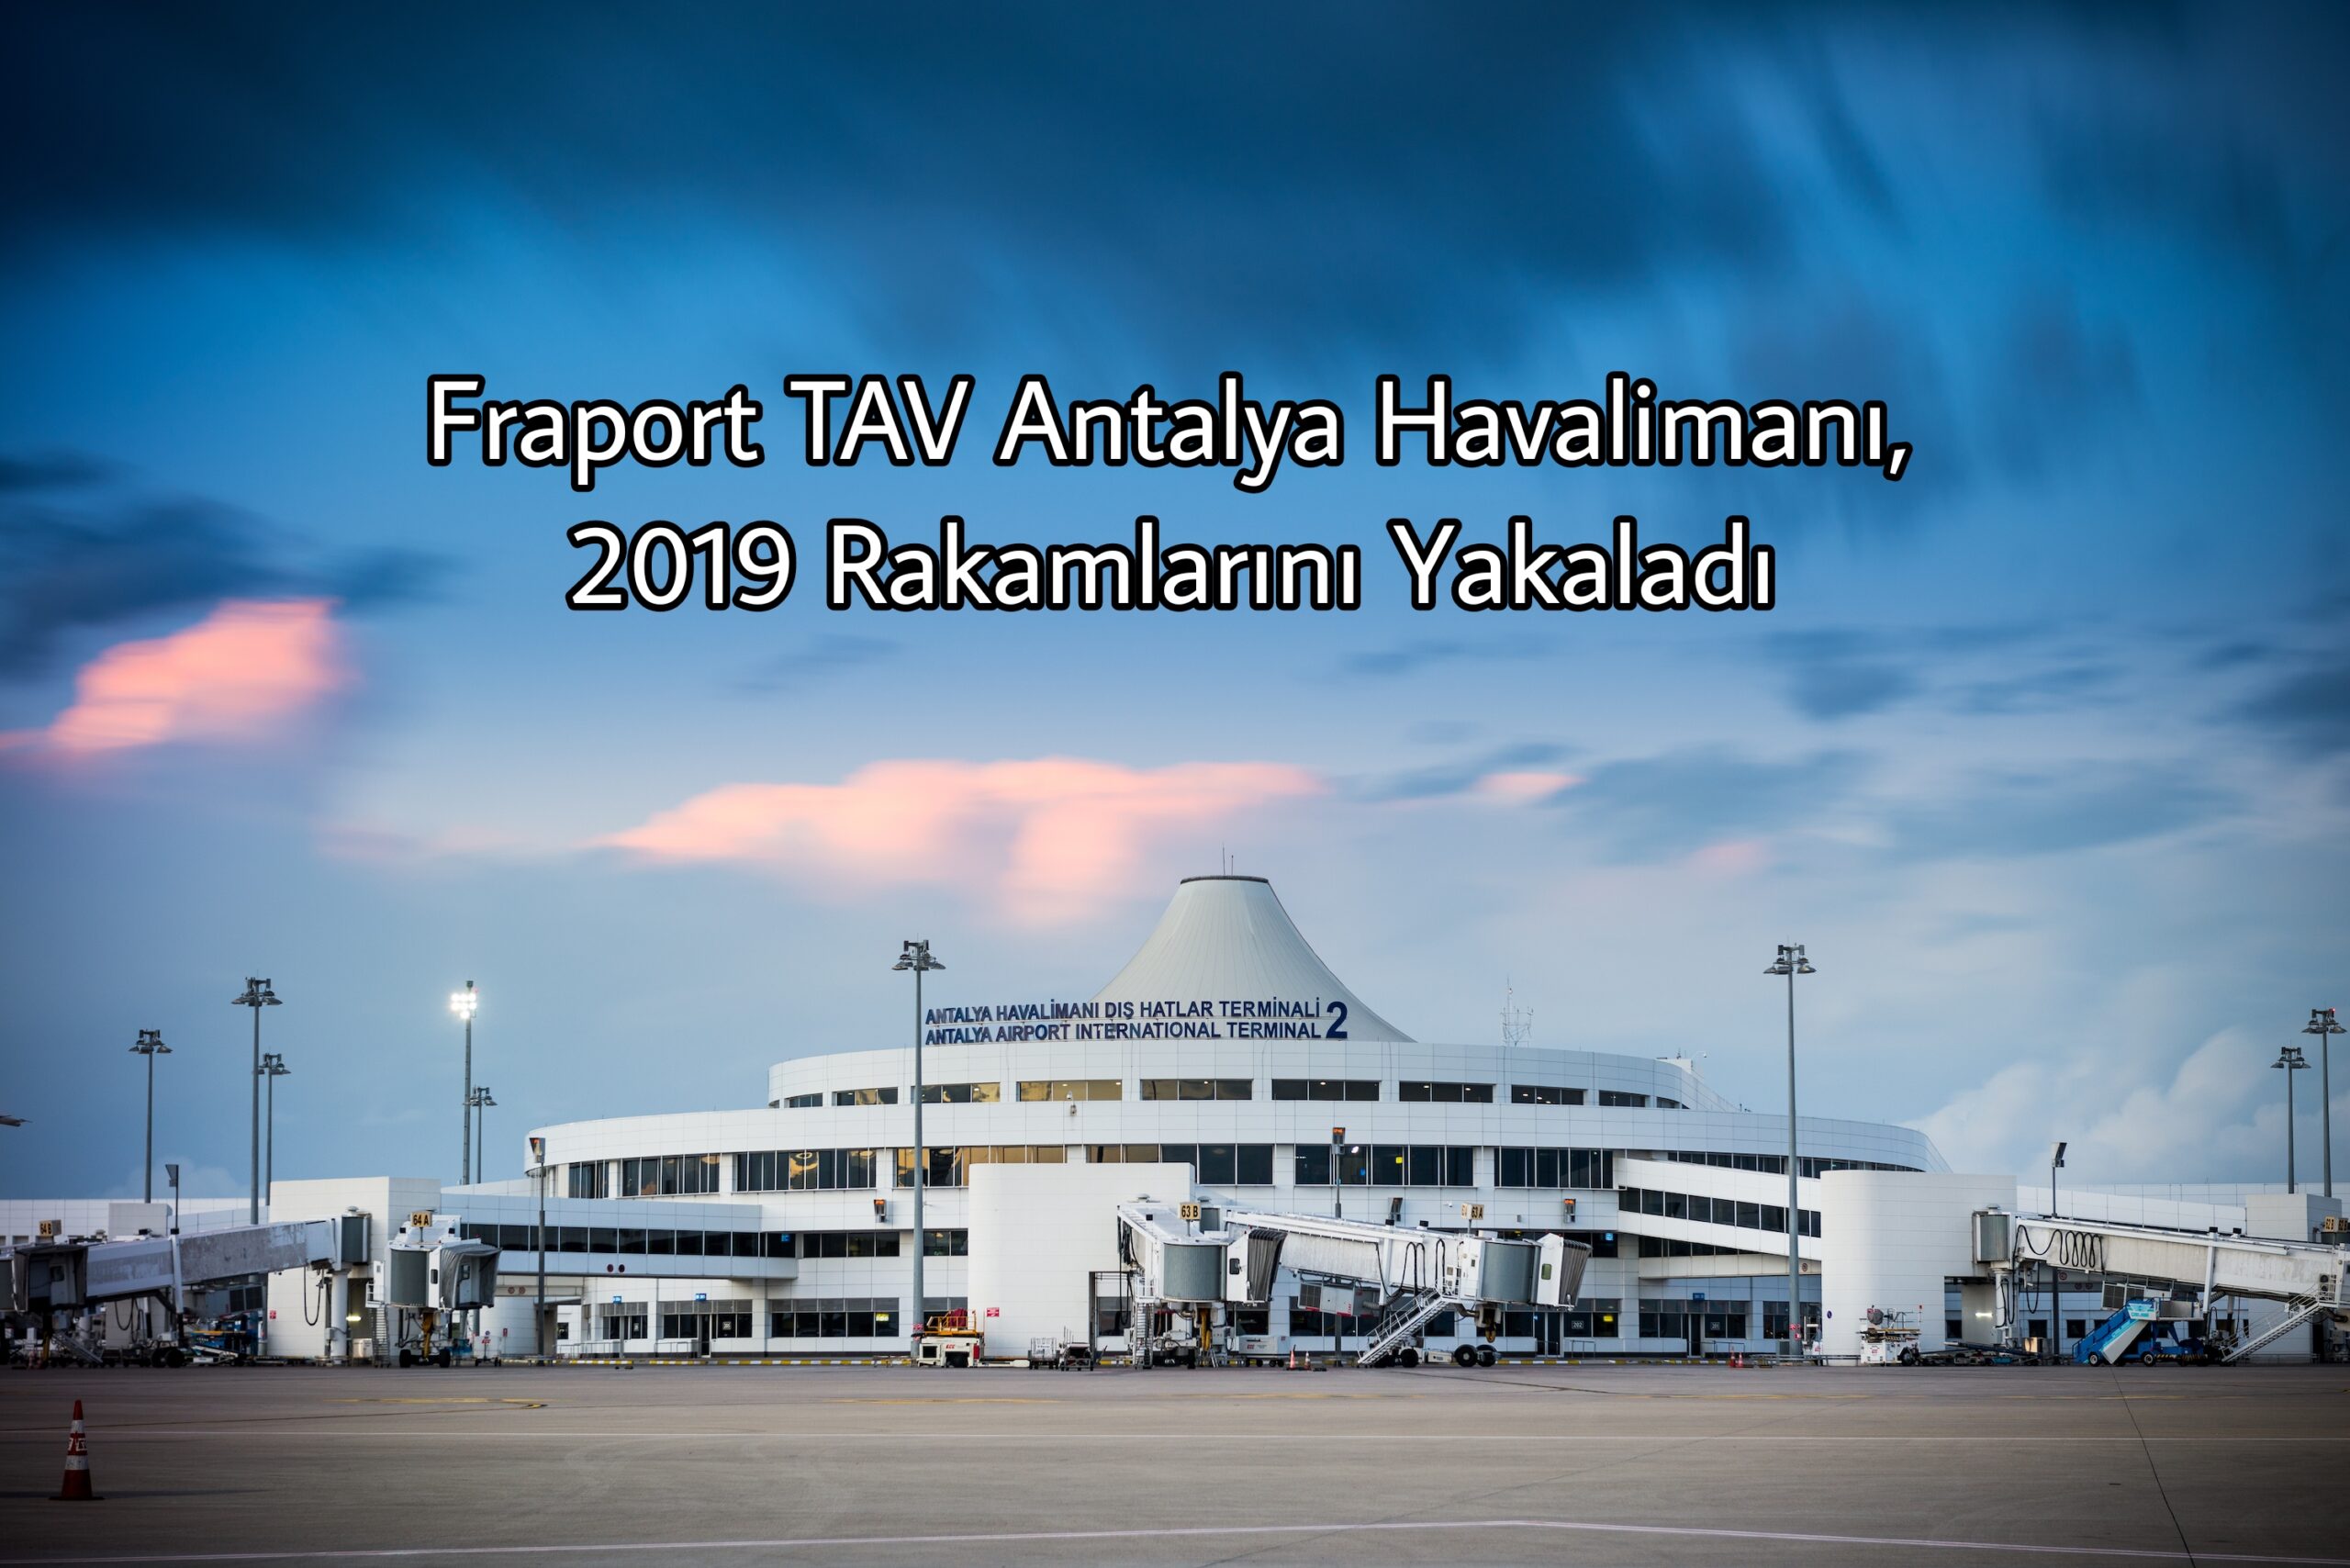 Antalya Havalimanı, 2019 Rakamlarını Yakaladı